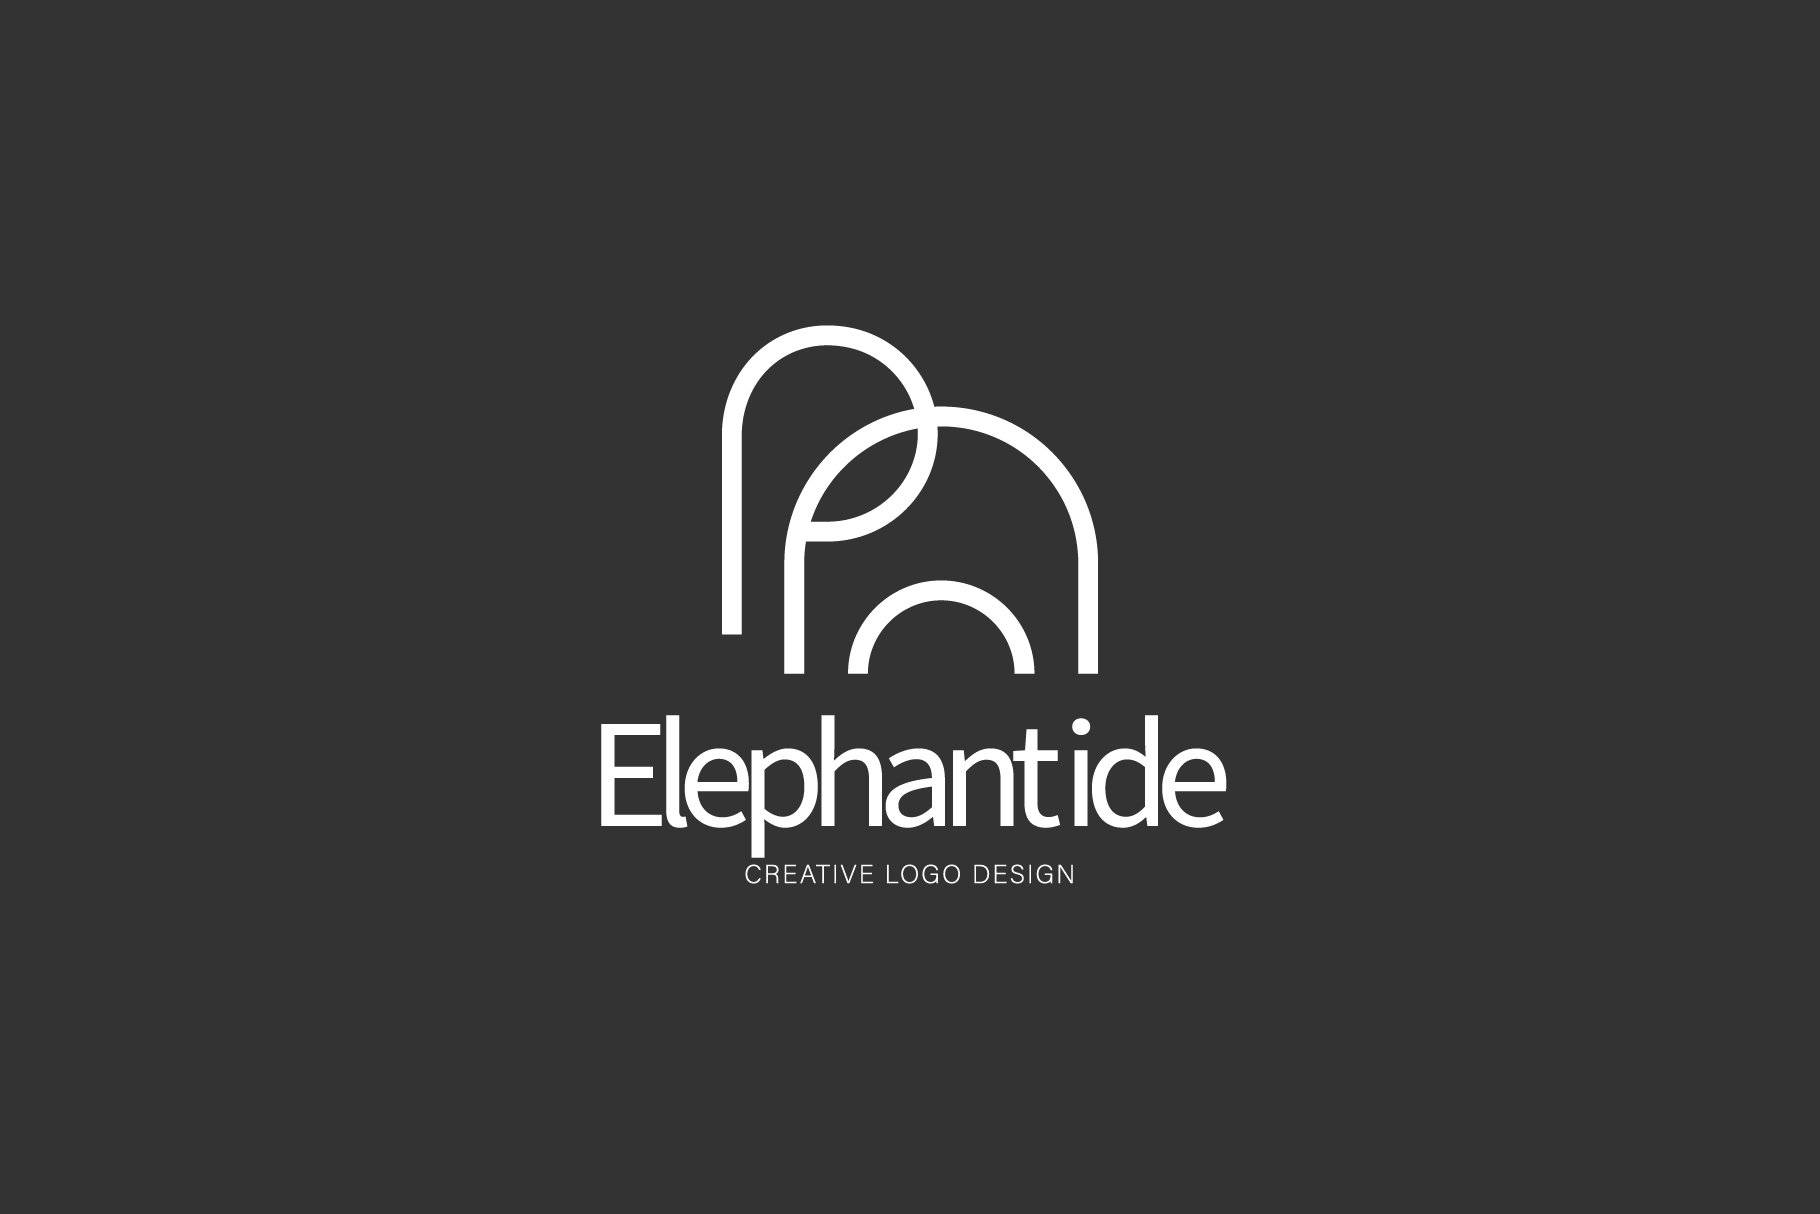 elephant logo preview image.